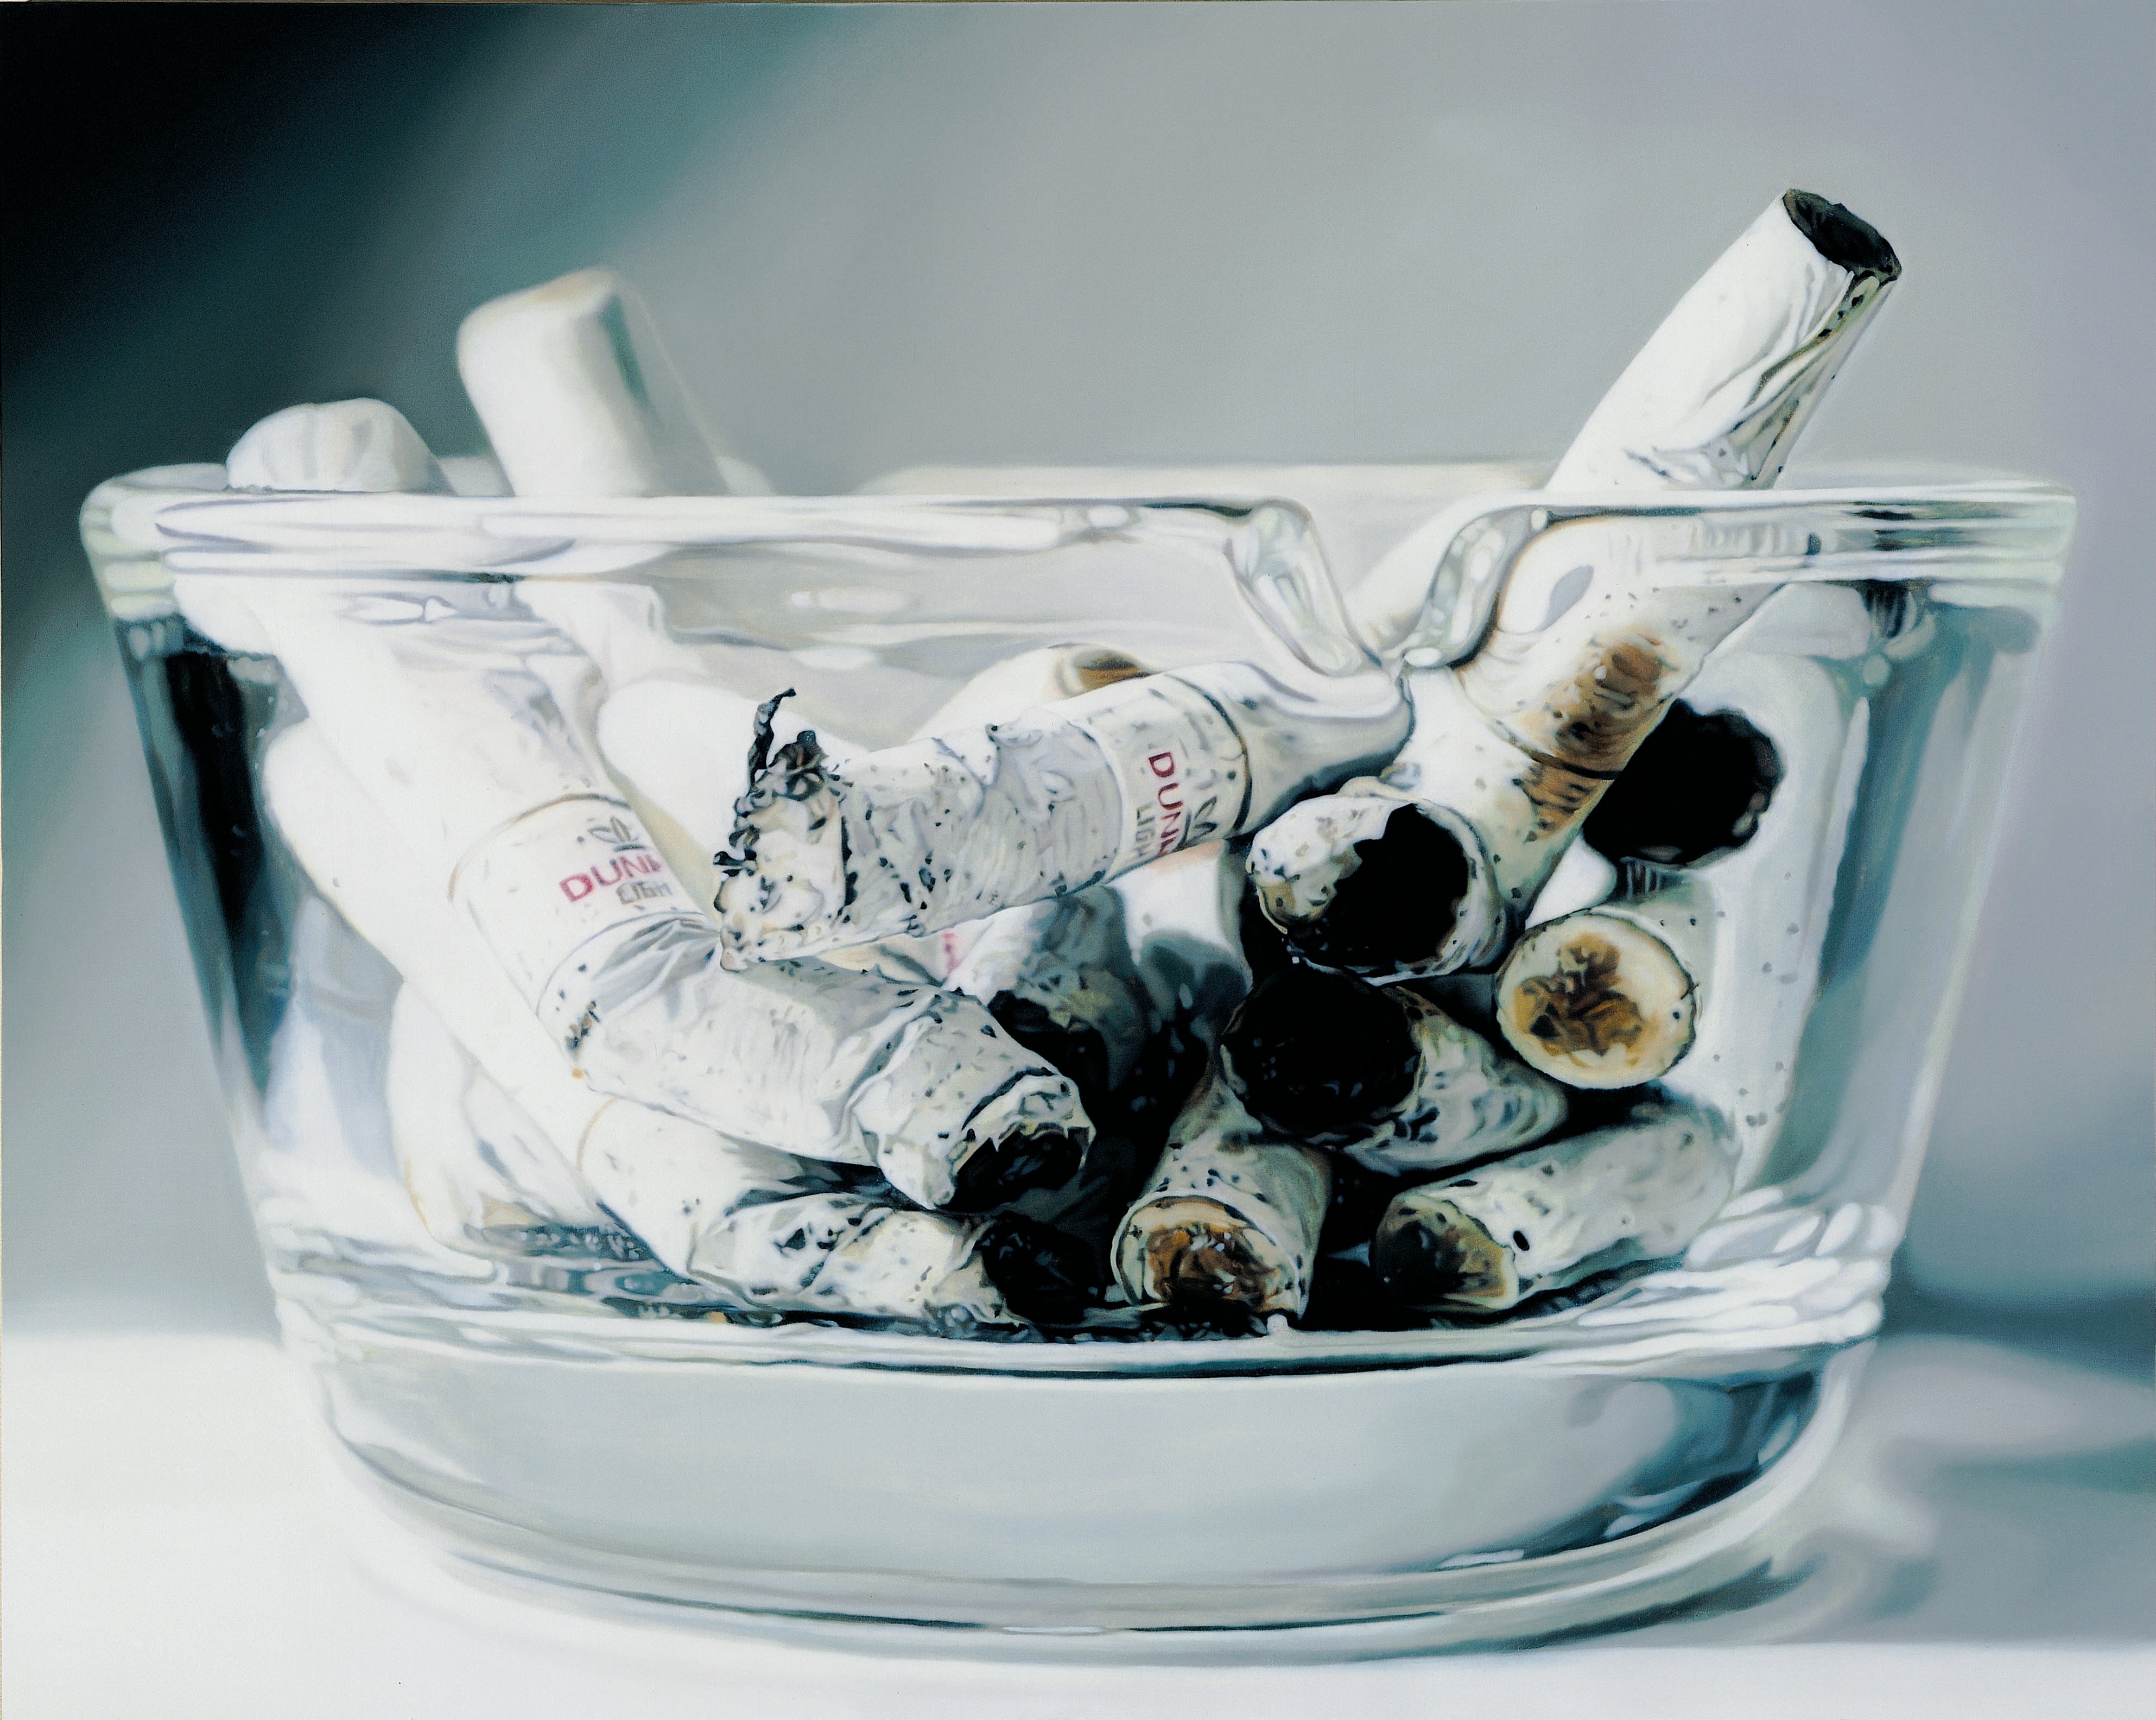 Cigarettes,2007